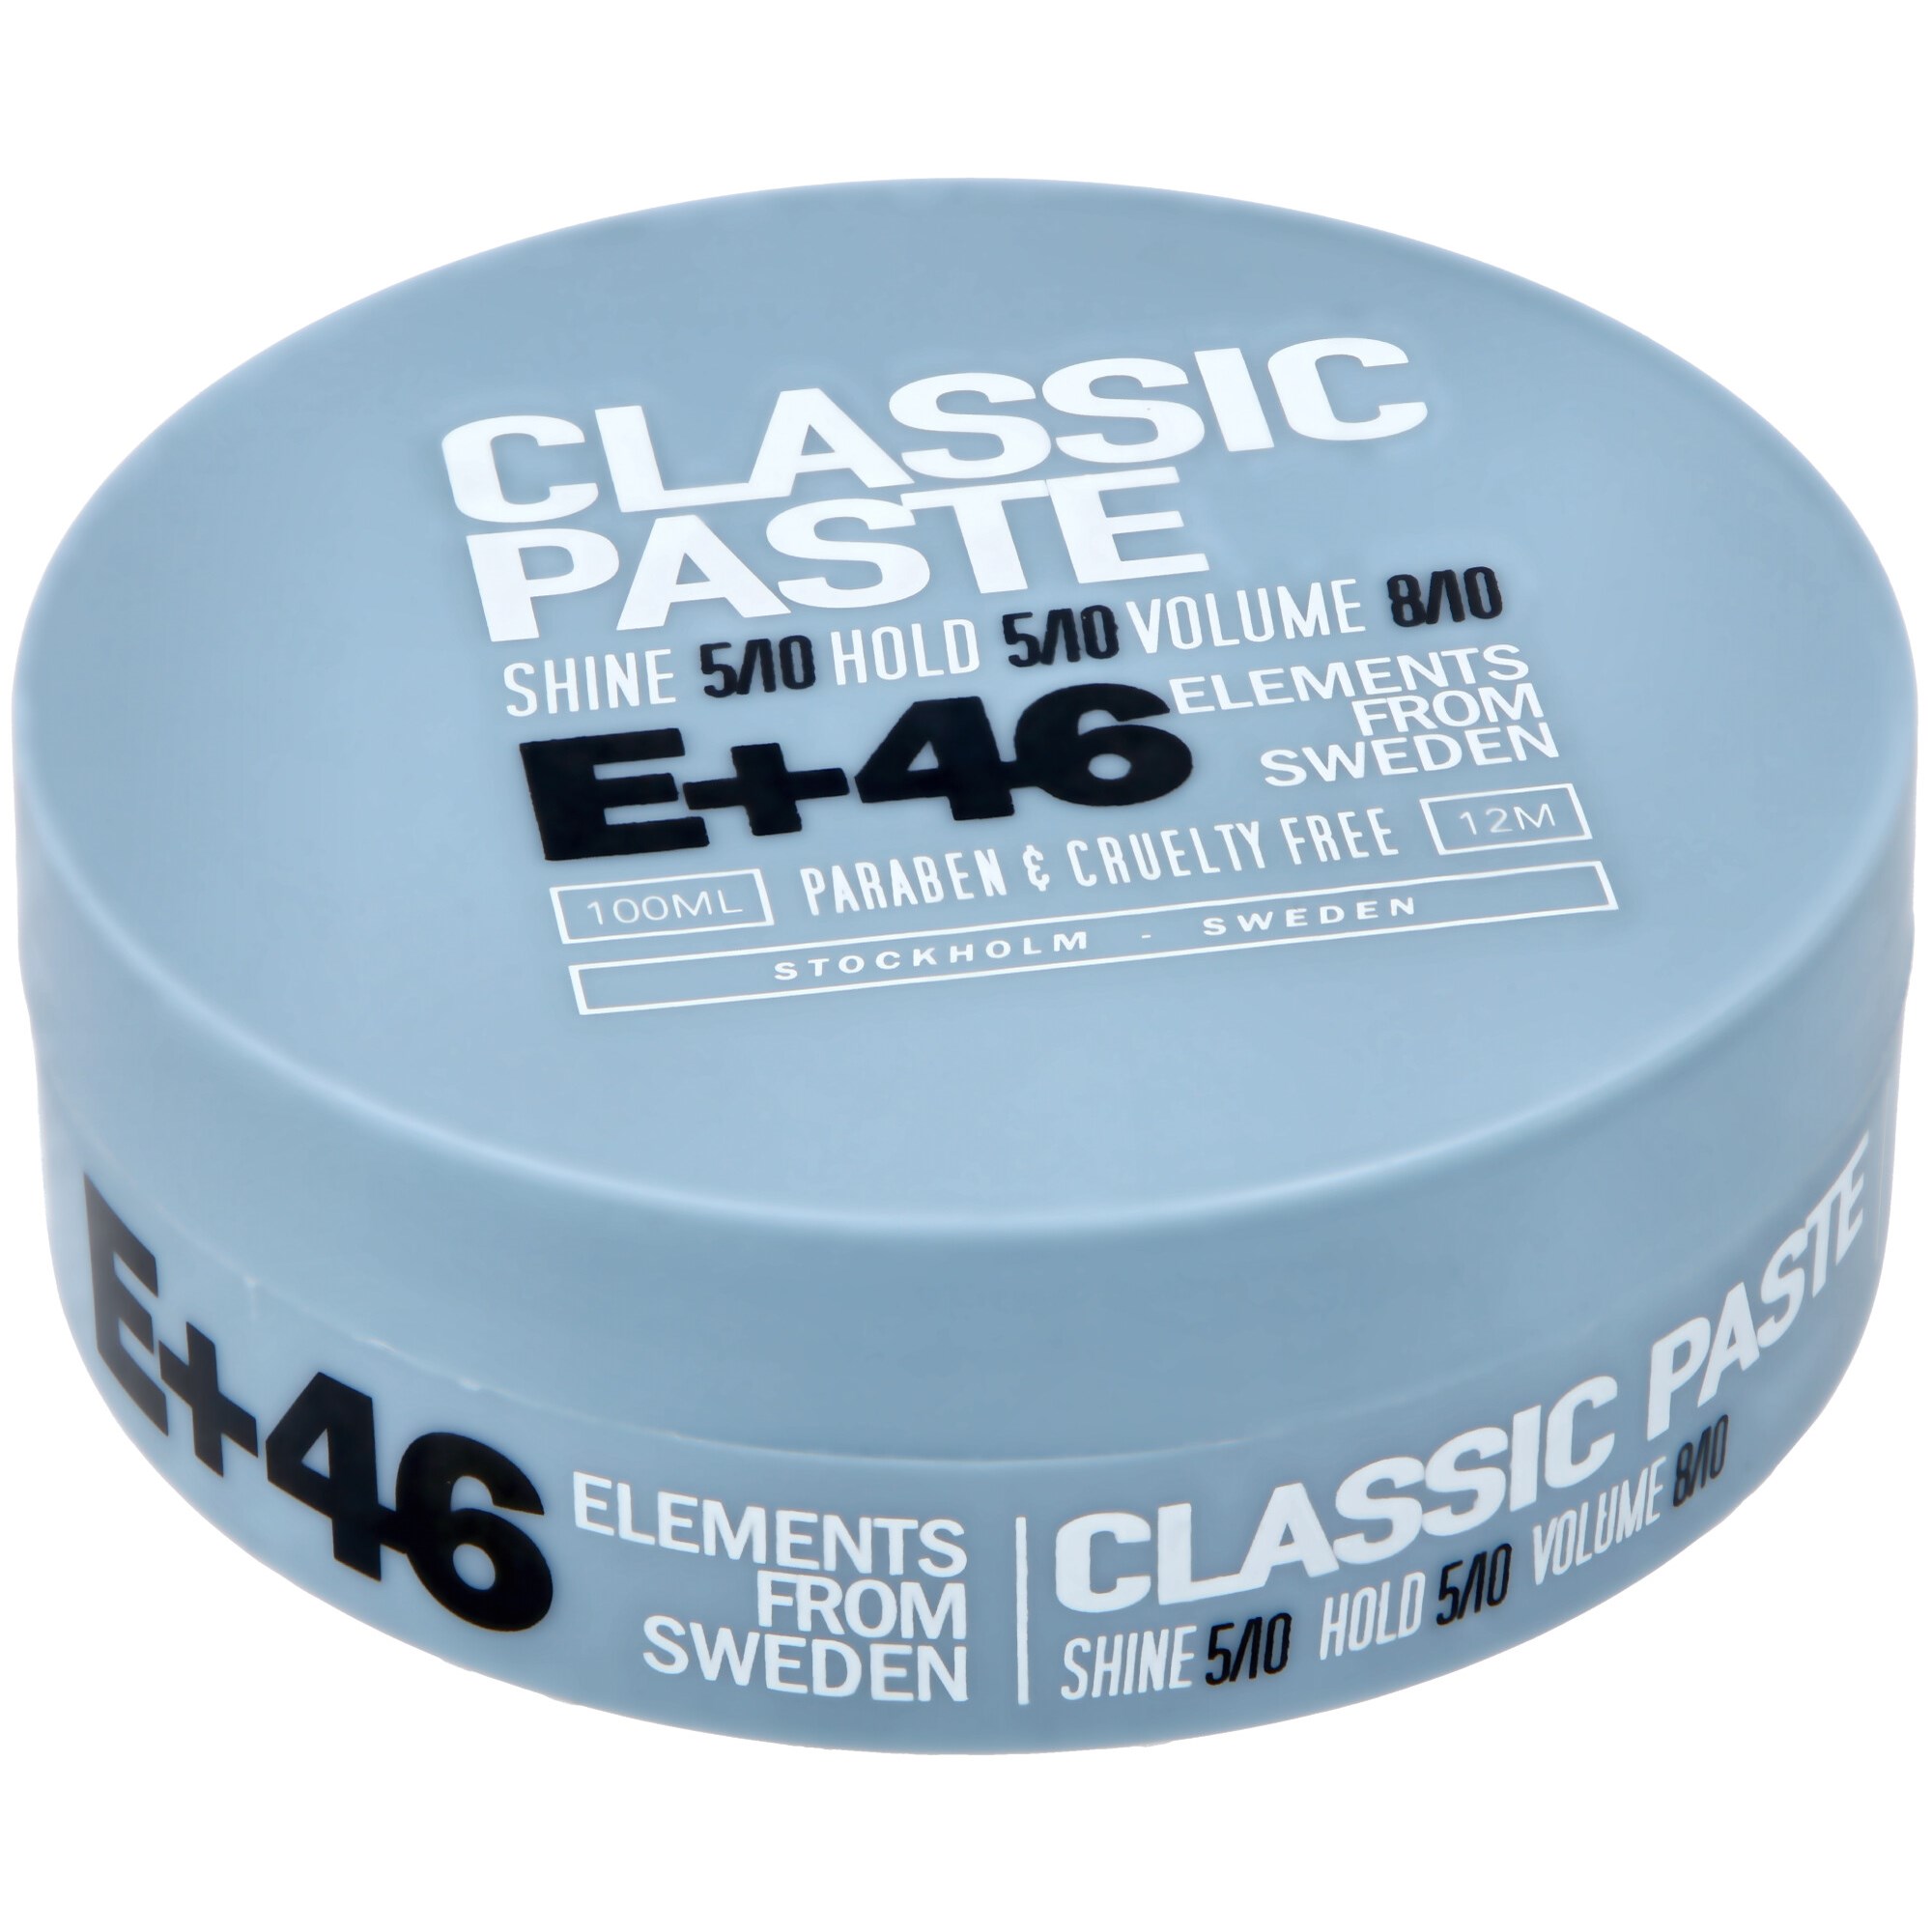 E+46 Classic Paste 100ml